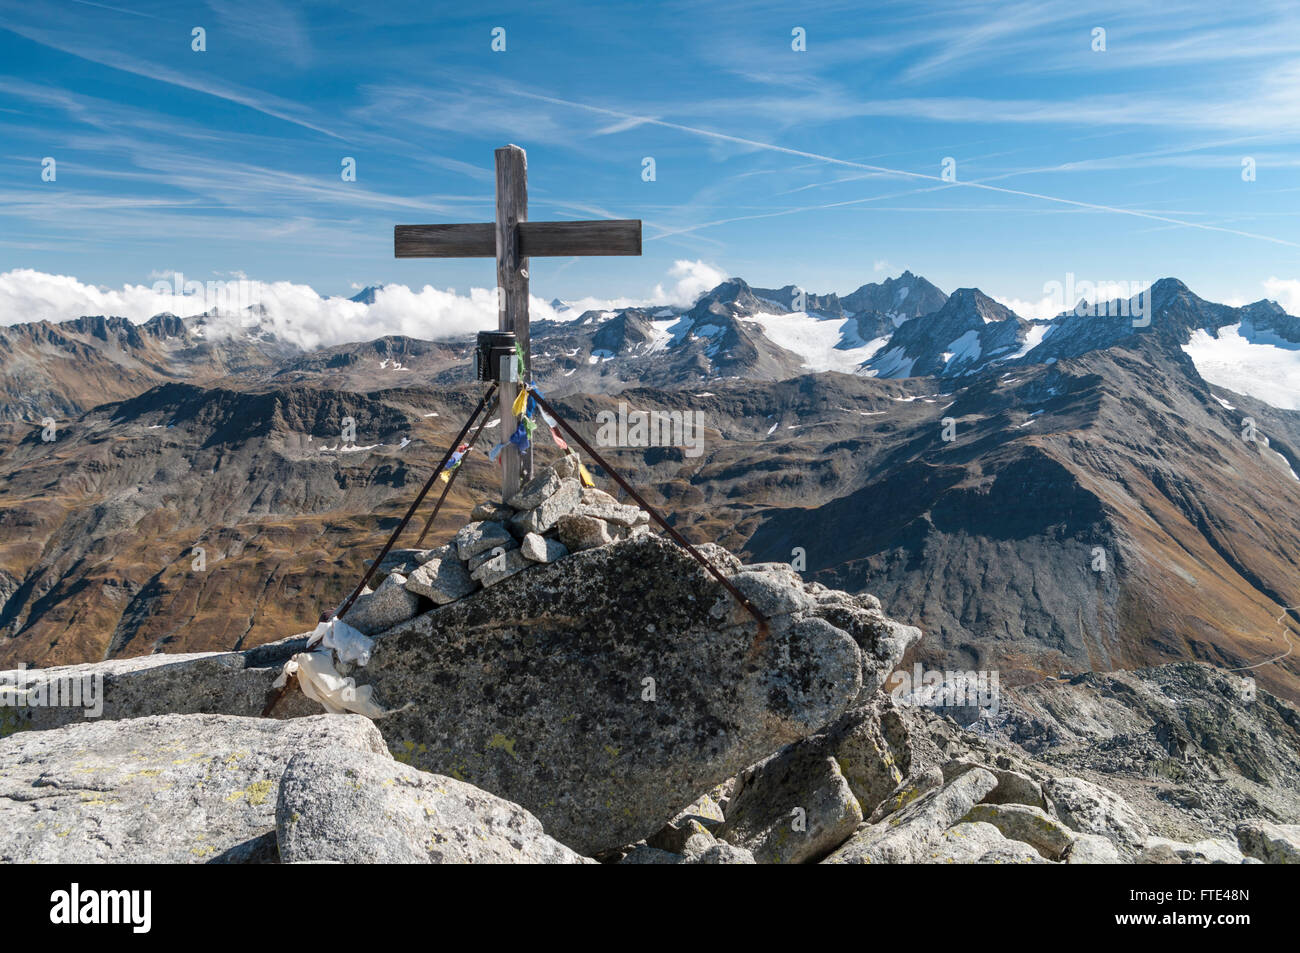 Cruz marcando la cumbre de Klein Furkahorn (3026 m / 9928 ft), una montaña en los Alpes. Los cantones de Uri y el Valais, Suiza. Foto de stock